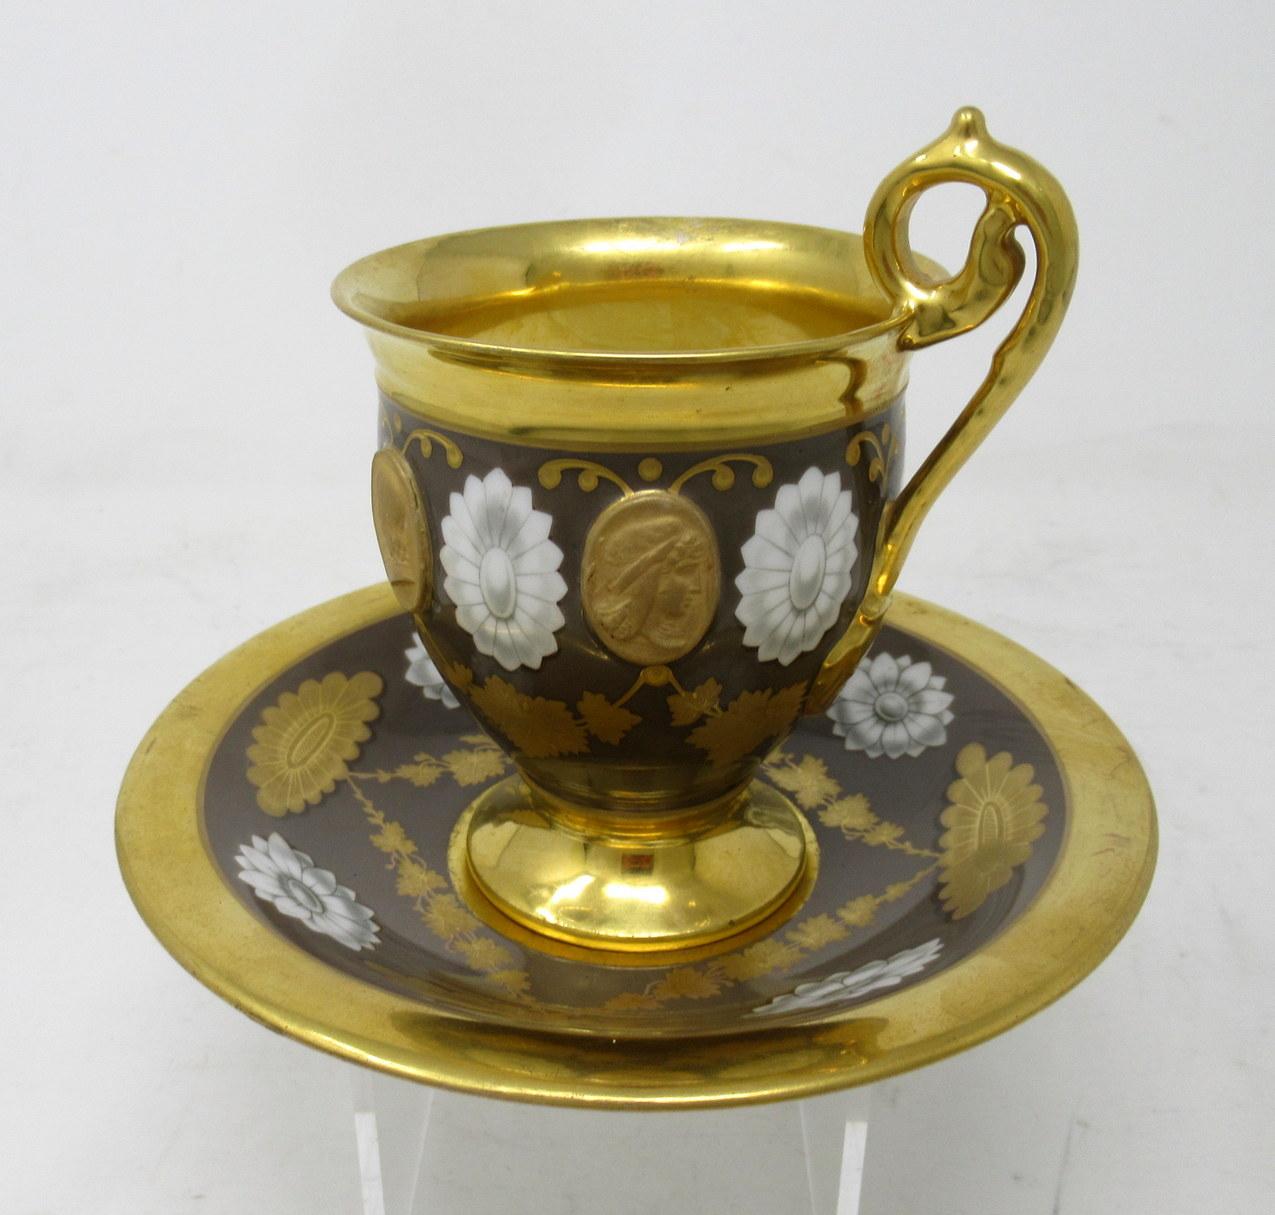 Eine außergewöhnliche Teetasse aus französischem Pariser Porzellan, komplett mit dem originalen Unterteller, von hervorragender Qualität. Erstes Viertel des neunzehnten Jahrhunderts.

Exquisit bemalt mit klassischen monochromen Ovalen im Wechsel